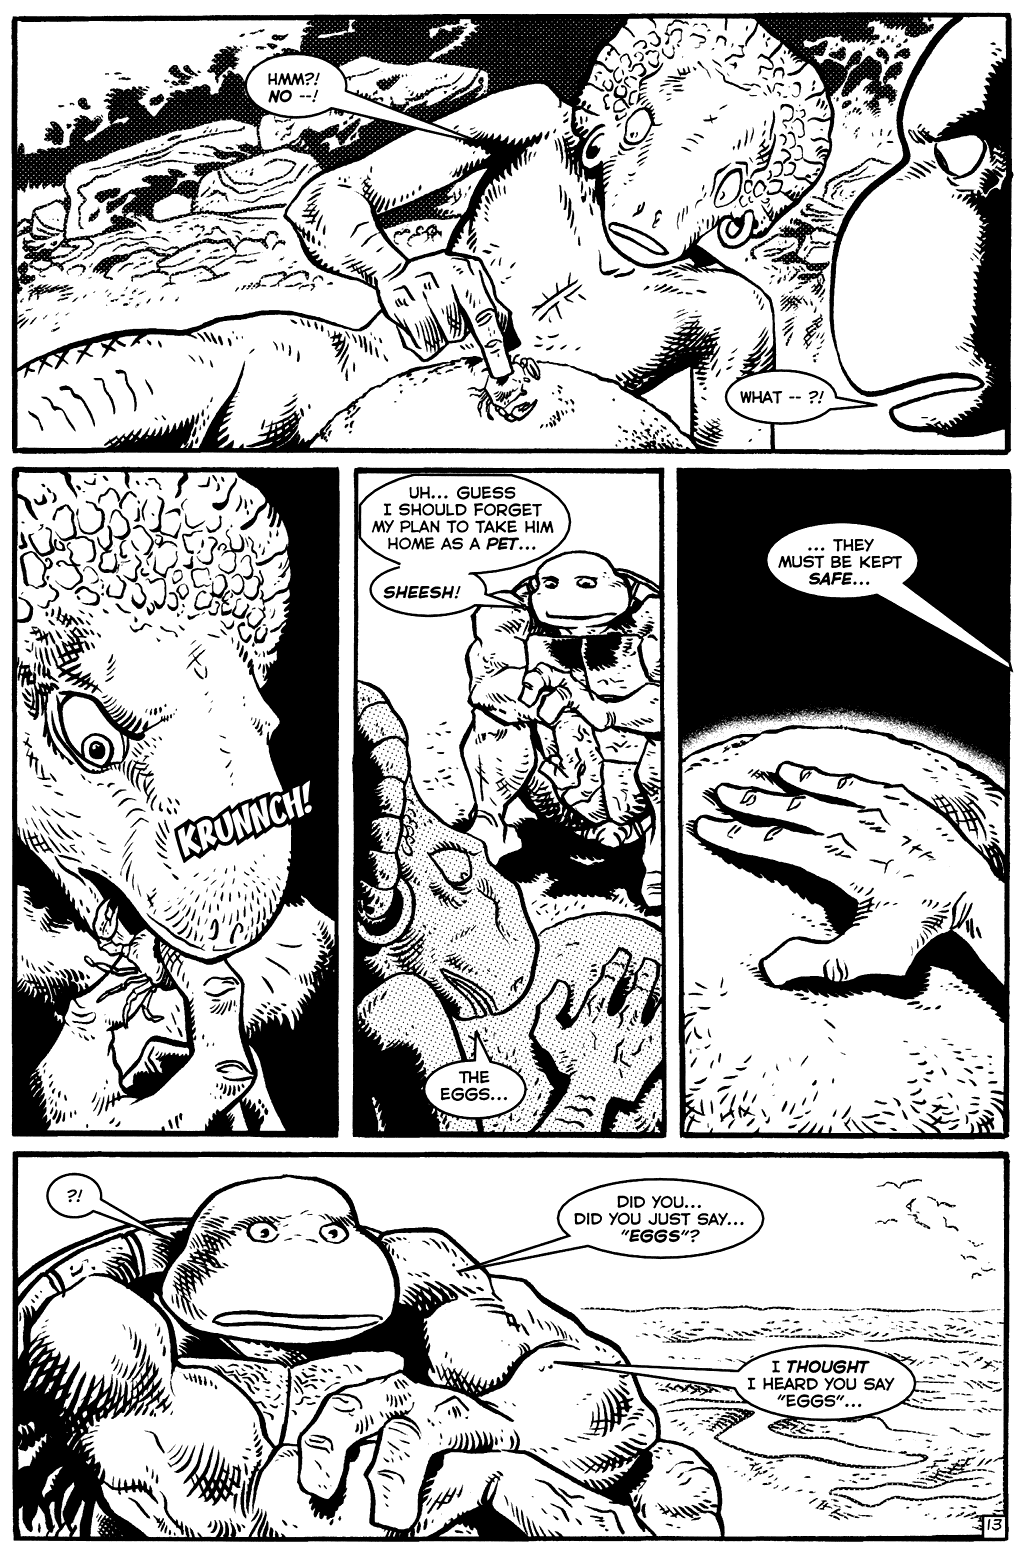 TMNT: Teenage Mutant Ninja Turtles issue 19 - Page 14